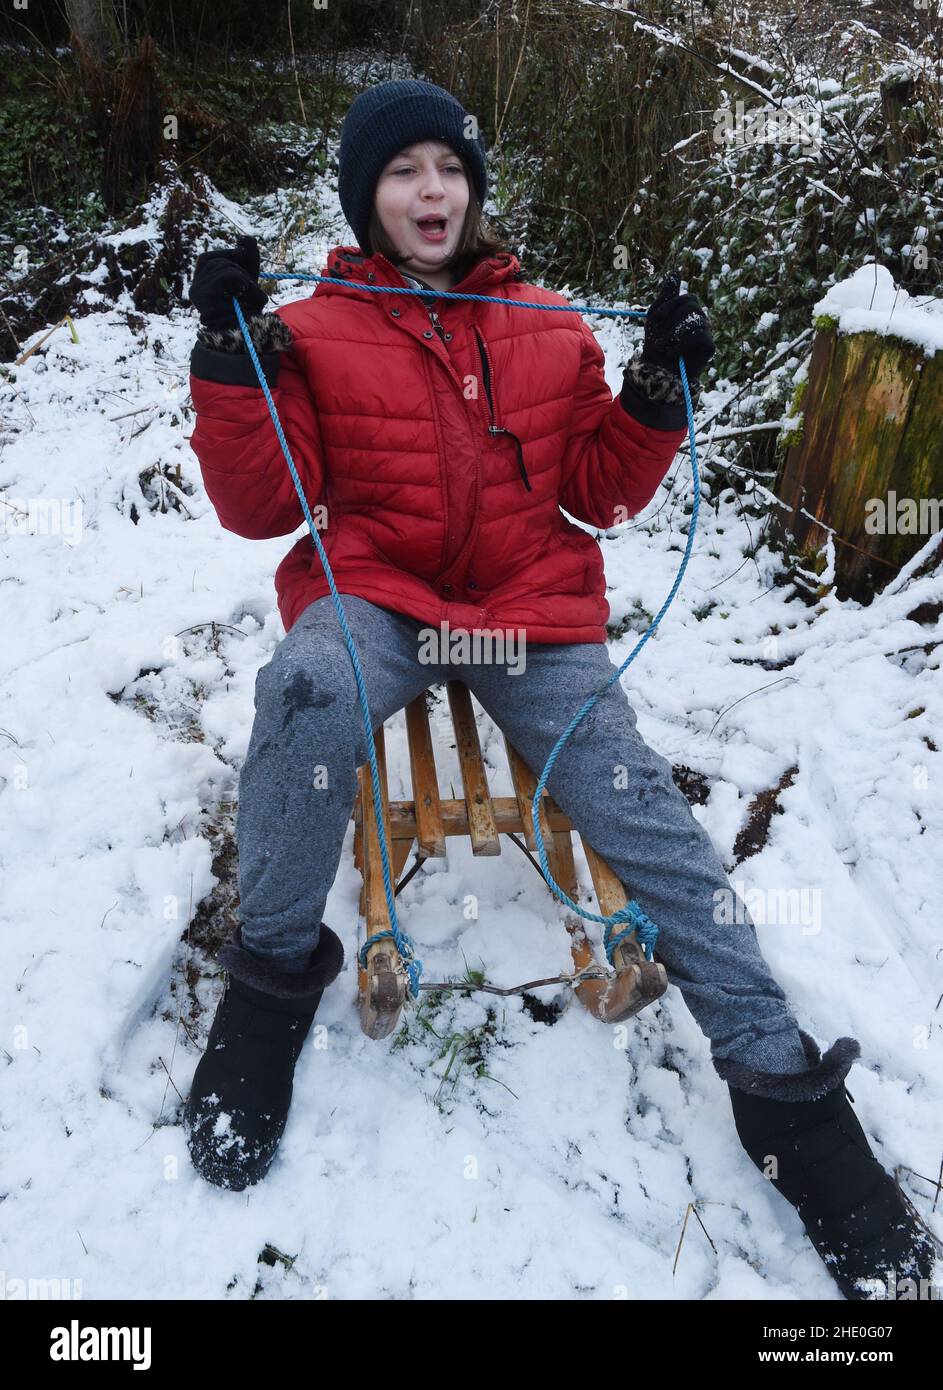 Peebles, Scottish Borders. 7th Jan 22.Schnee hat Schottland über Nacht übertönt, zur Freude der 10-jährigen Amelia Baggs aus Edinburgh, die ihr Winterrodelerlebnis im Wunderland während einer Reise nach Peebles in den Scottish Borders genossen hat. Kredit: eric mccowat/Alamy Live Nachrichten Stockfoto